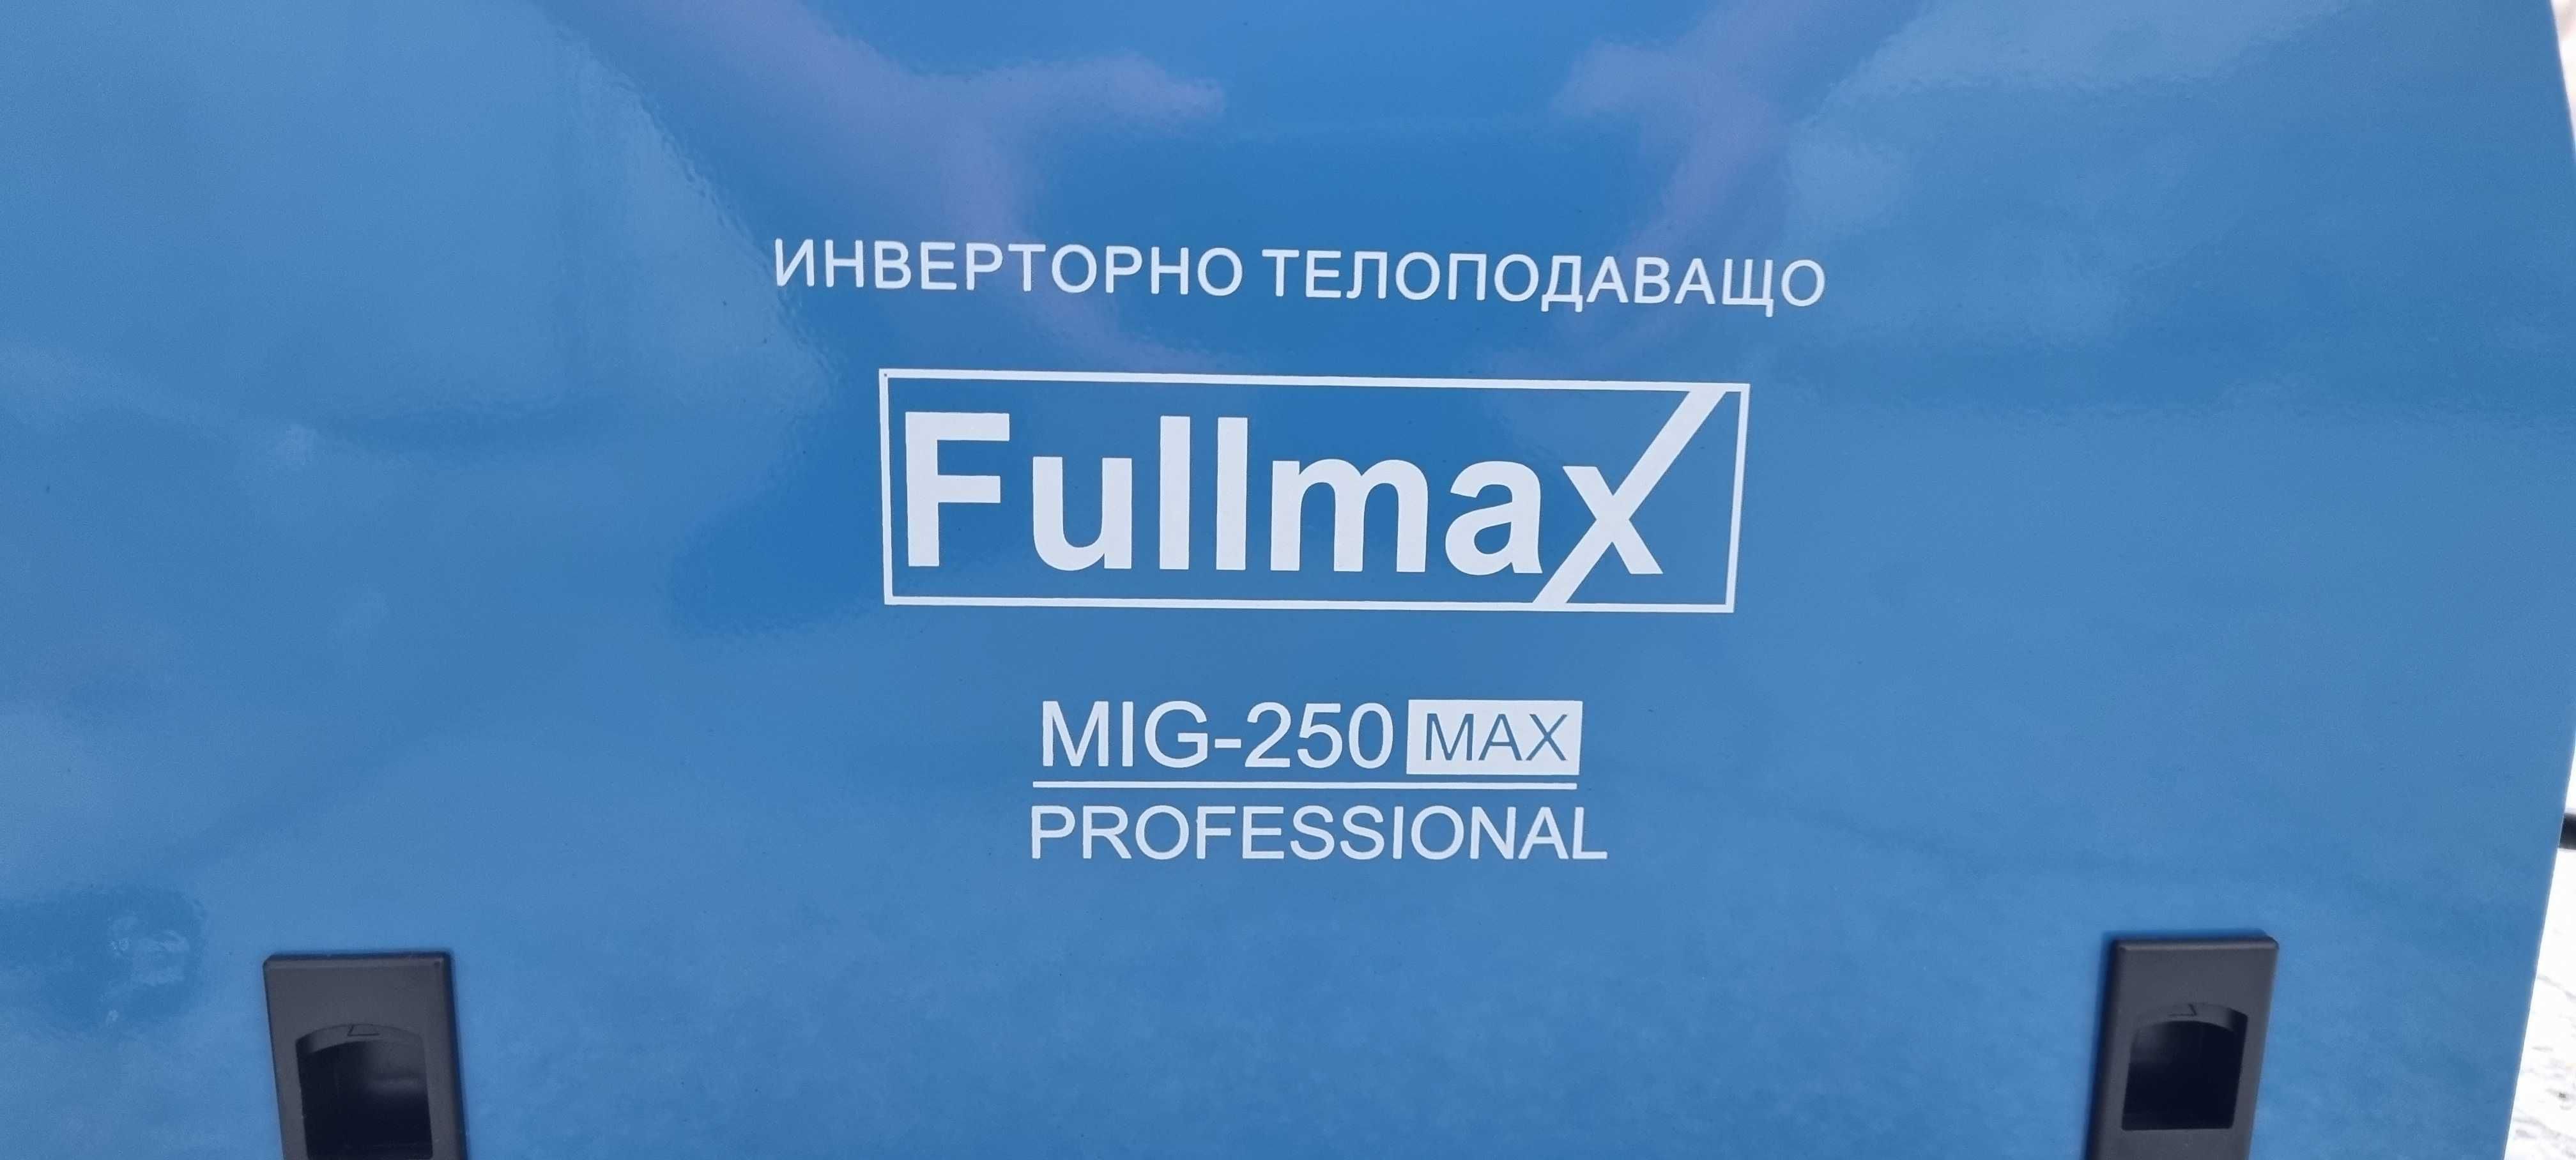 MIG- 250A MAX Телоподаващ апарат Fullmax